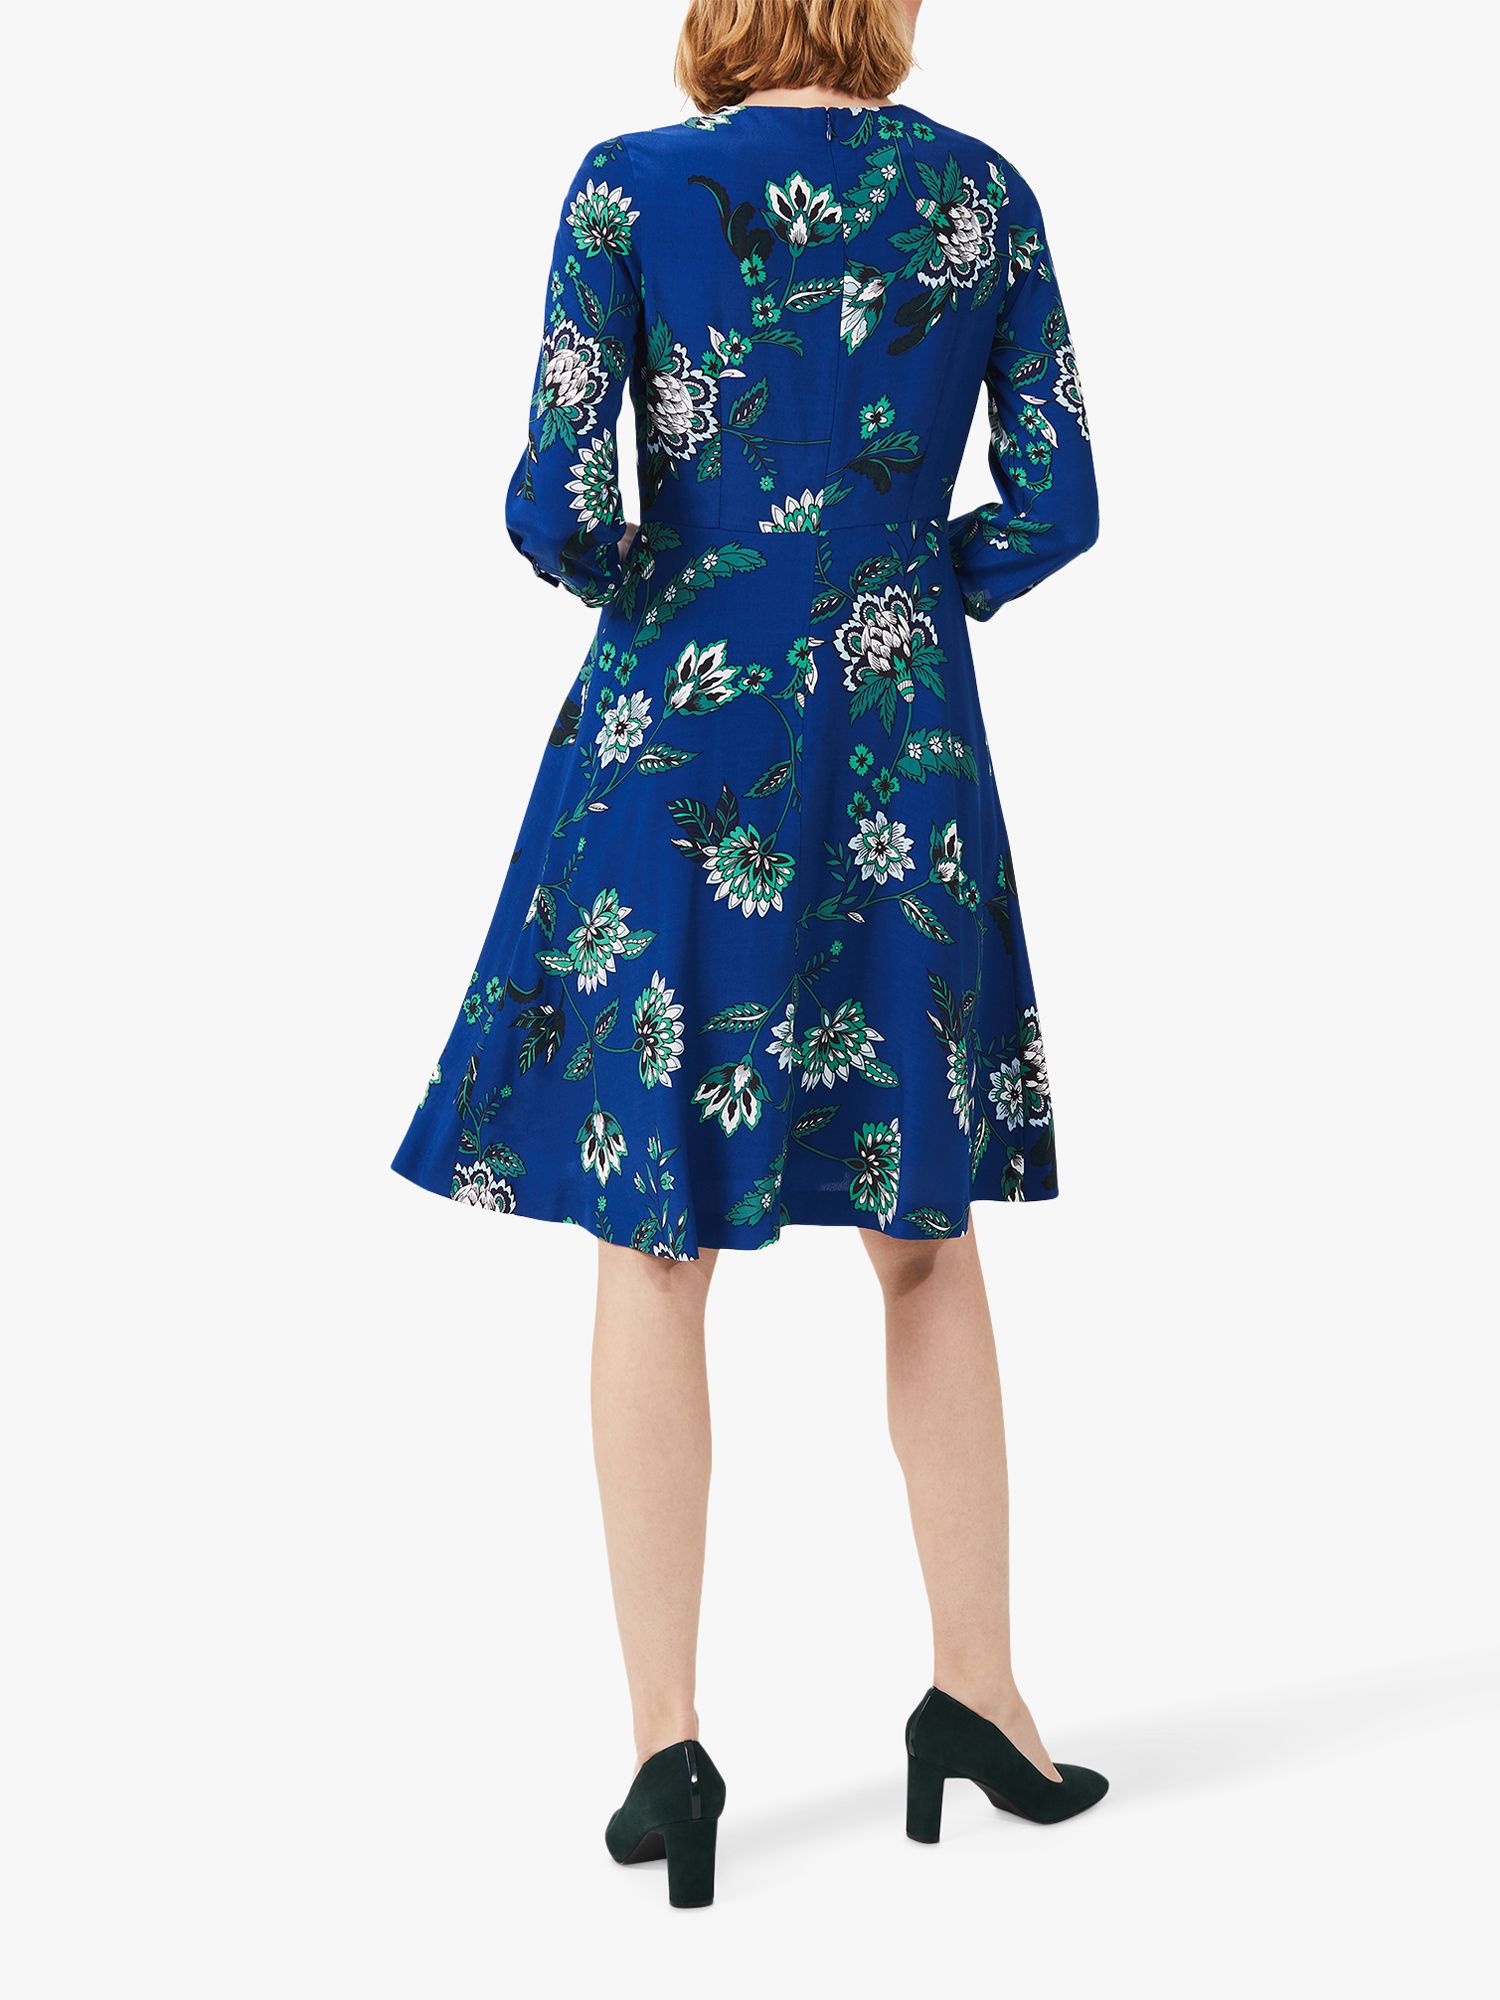 Hobbs Marietta Floral Dress, Azure/Apple Green, 10